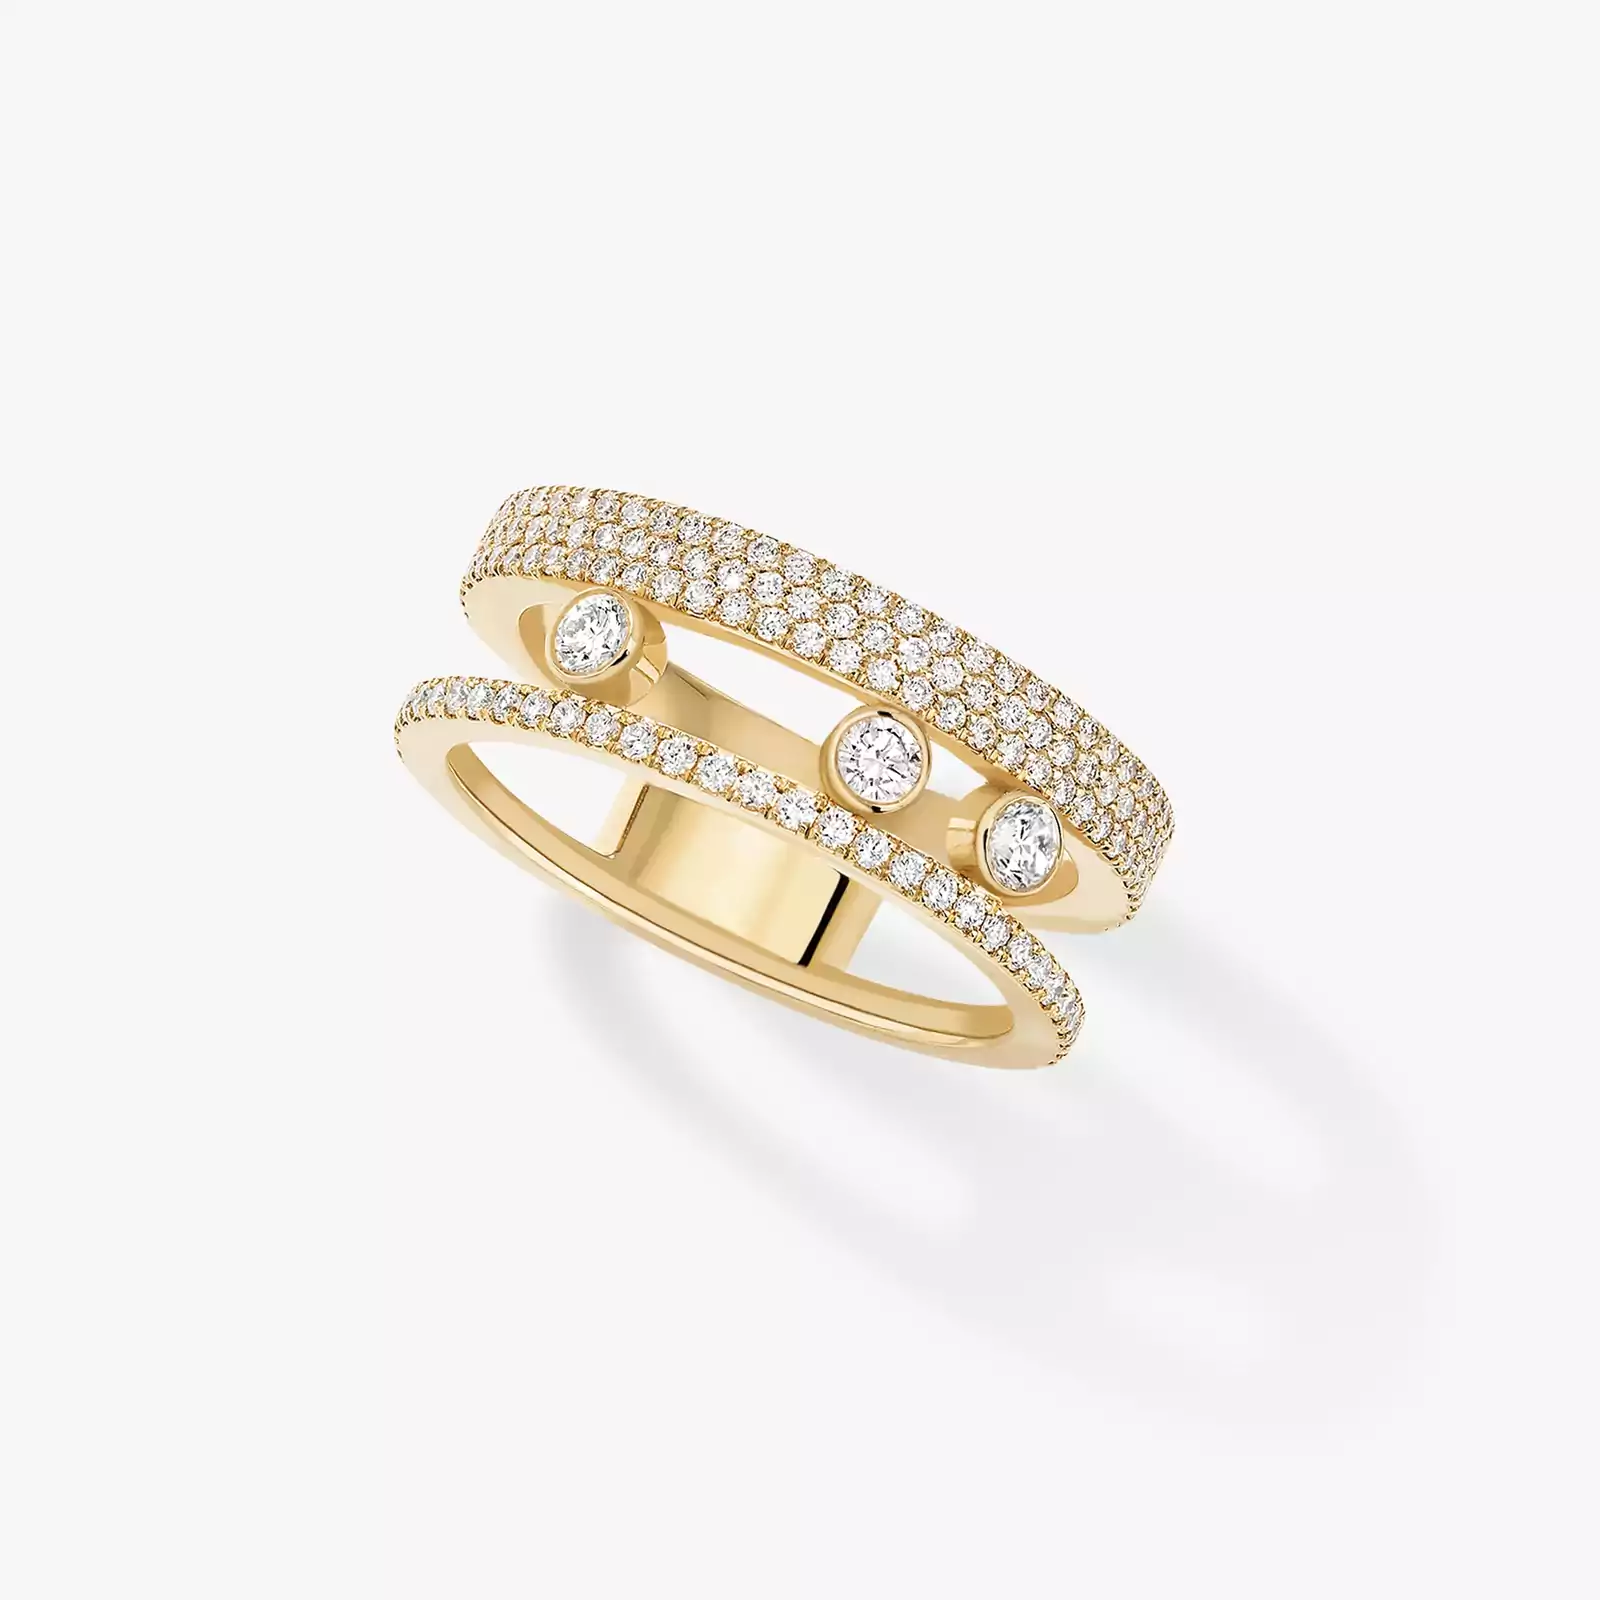 Кольцо Для нее Желтое золото Бриллиантами Move Romane Pavée  07128-YG